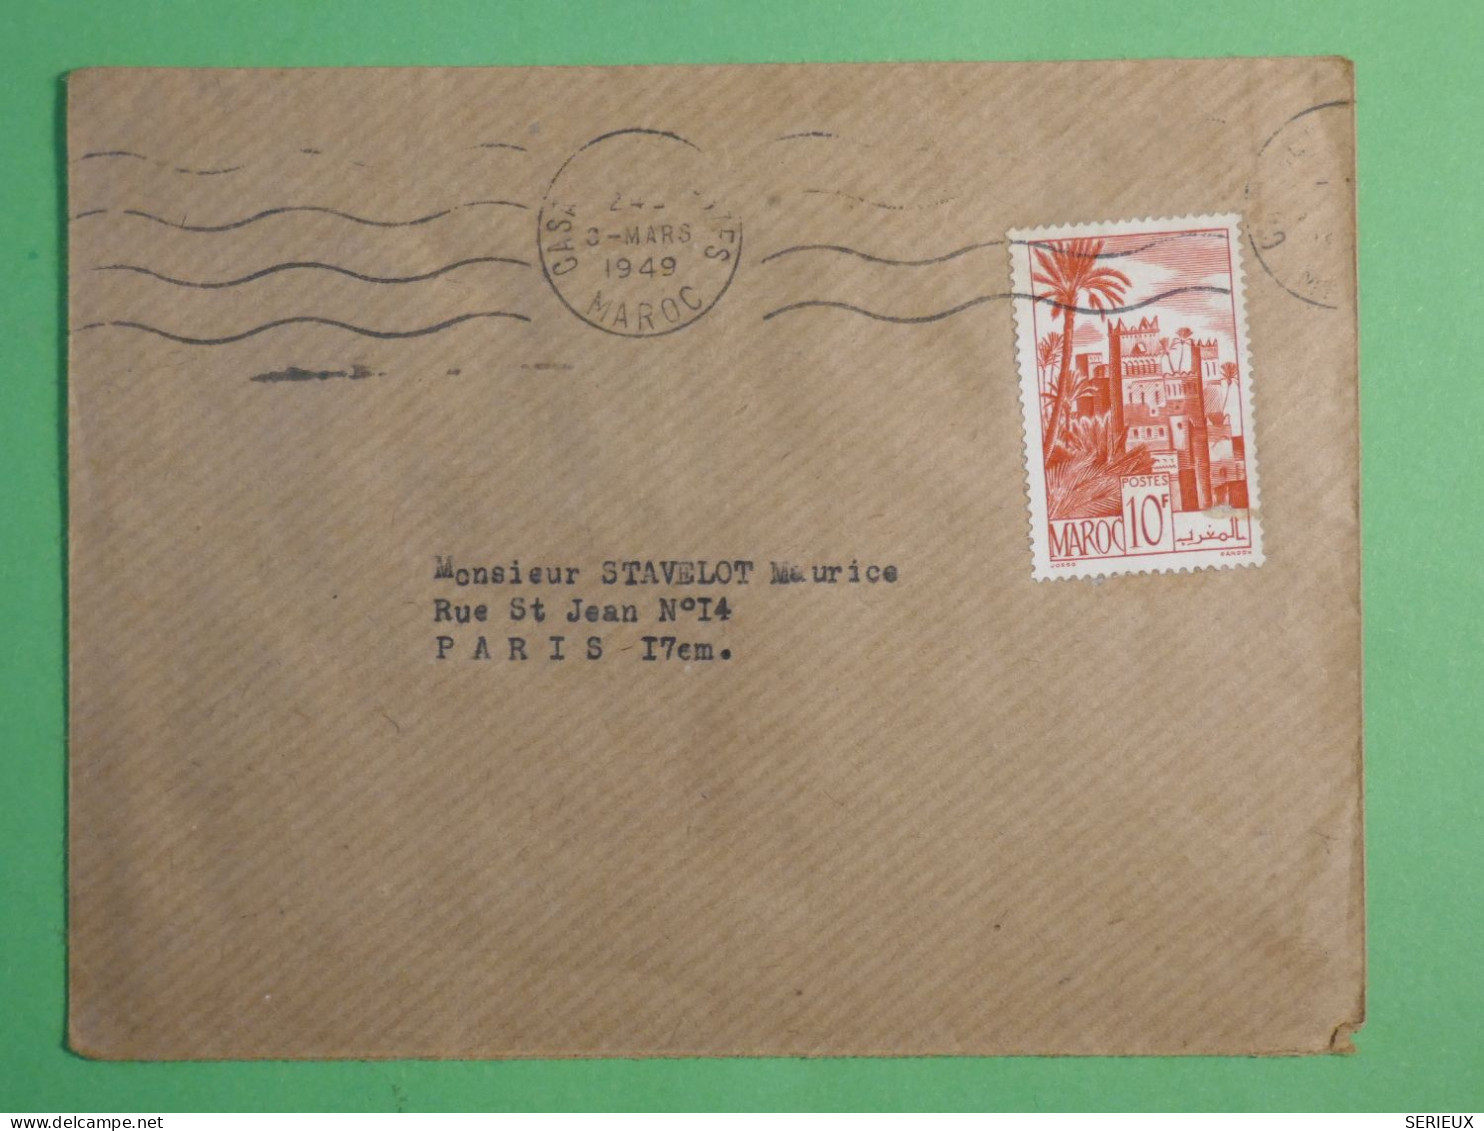 DN17  MAROC    LETTRE    1949 CASA  A  PARIS FRANCIA     + + AFF. INTERESSANT +++ - Storia Postale